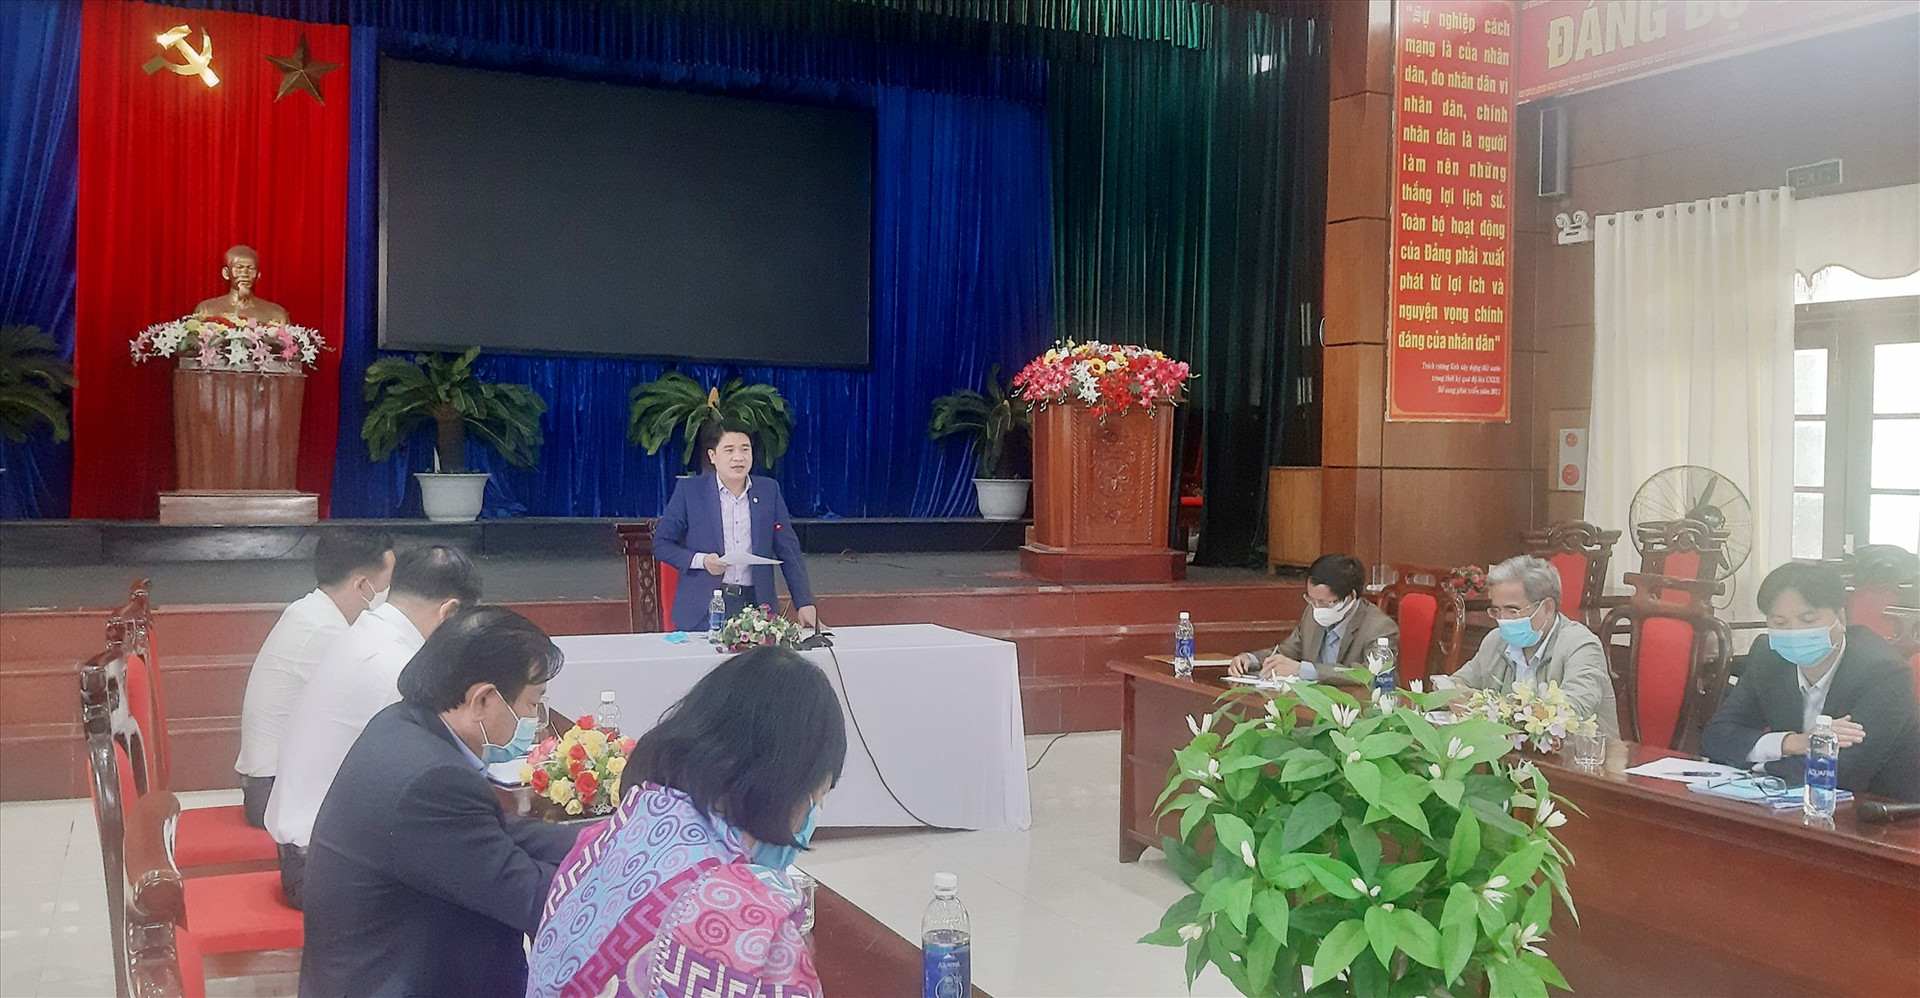 Phó Chủ tịch UBND tỉnh Trần Văn Tân phát biểu tại cuộc làm việc với lãnh đạo huyện Quế Sơn.     Ảnh: S.L